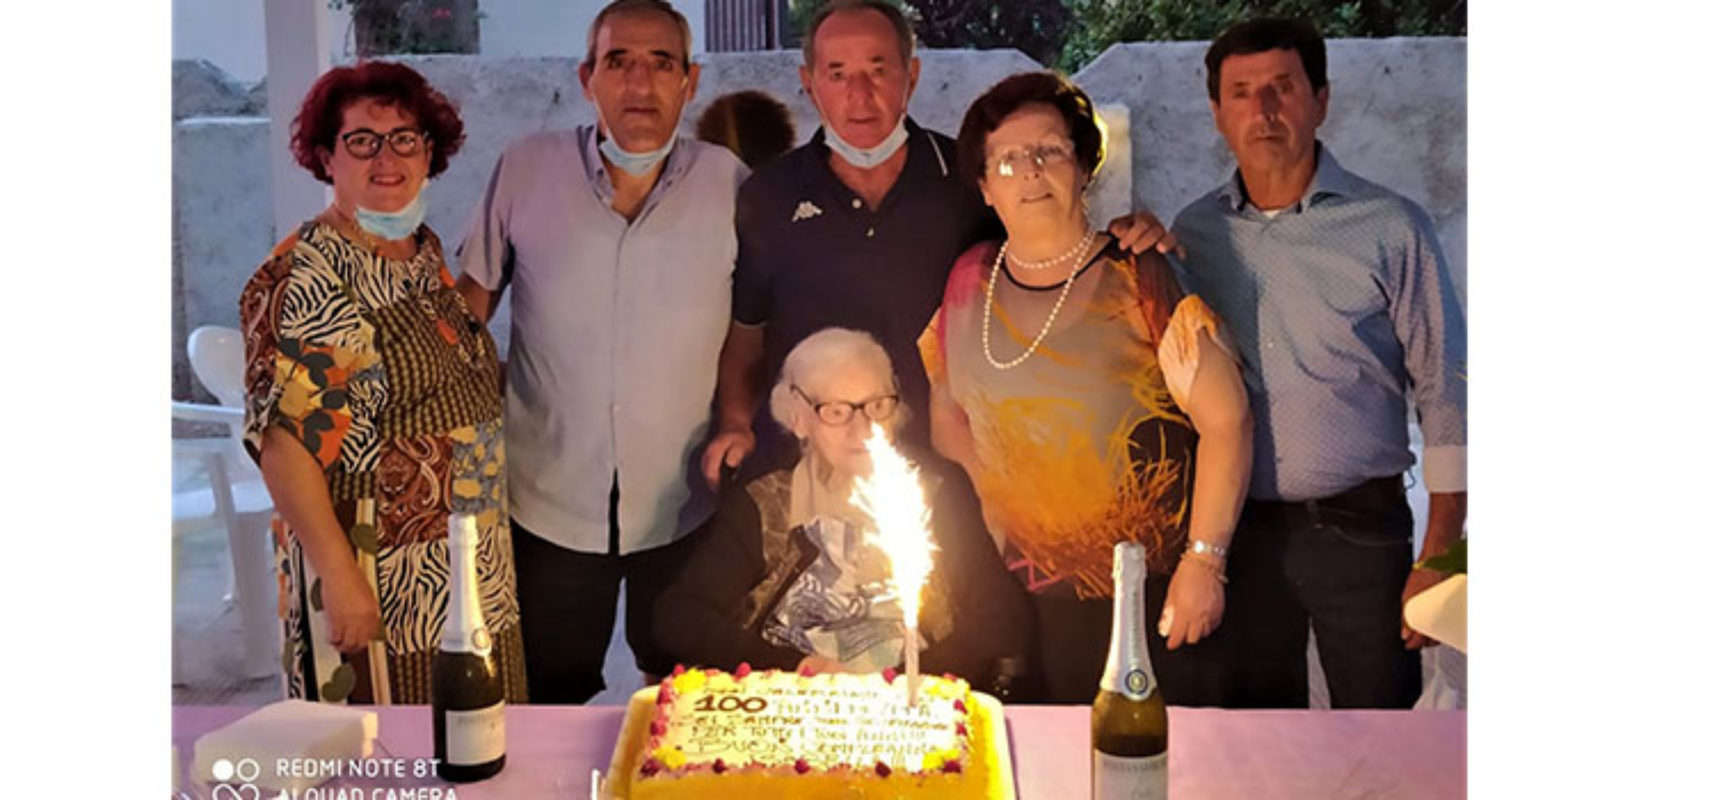 Bisceglie festeggia i 100 anni compiuti da Isabella Di Terlizzi